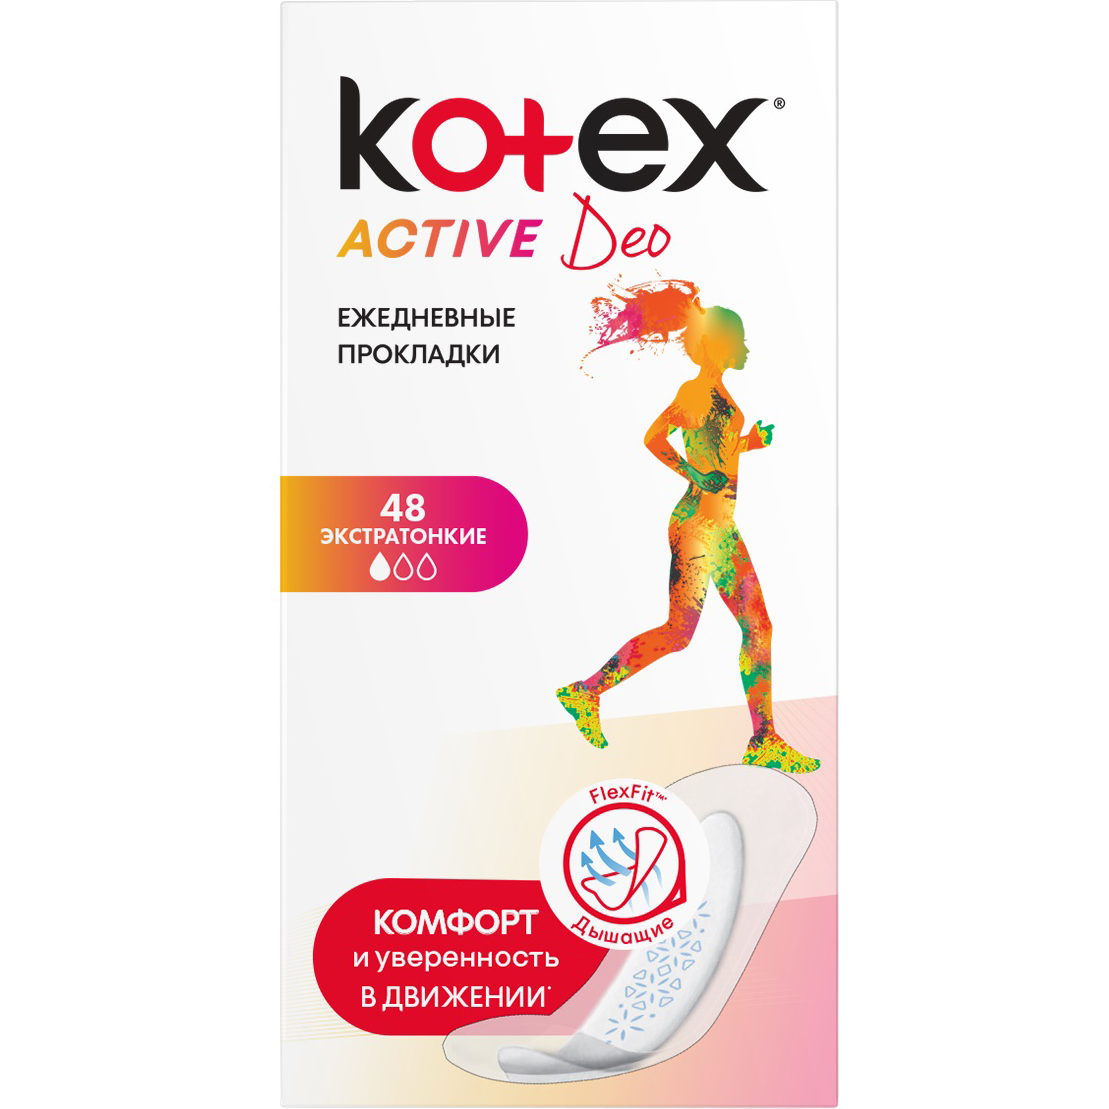 Прокладки Kotex Active Deo Экстратонкие 48 шт прокладки kotex active deo экстратонкие 48 шт